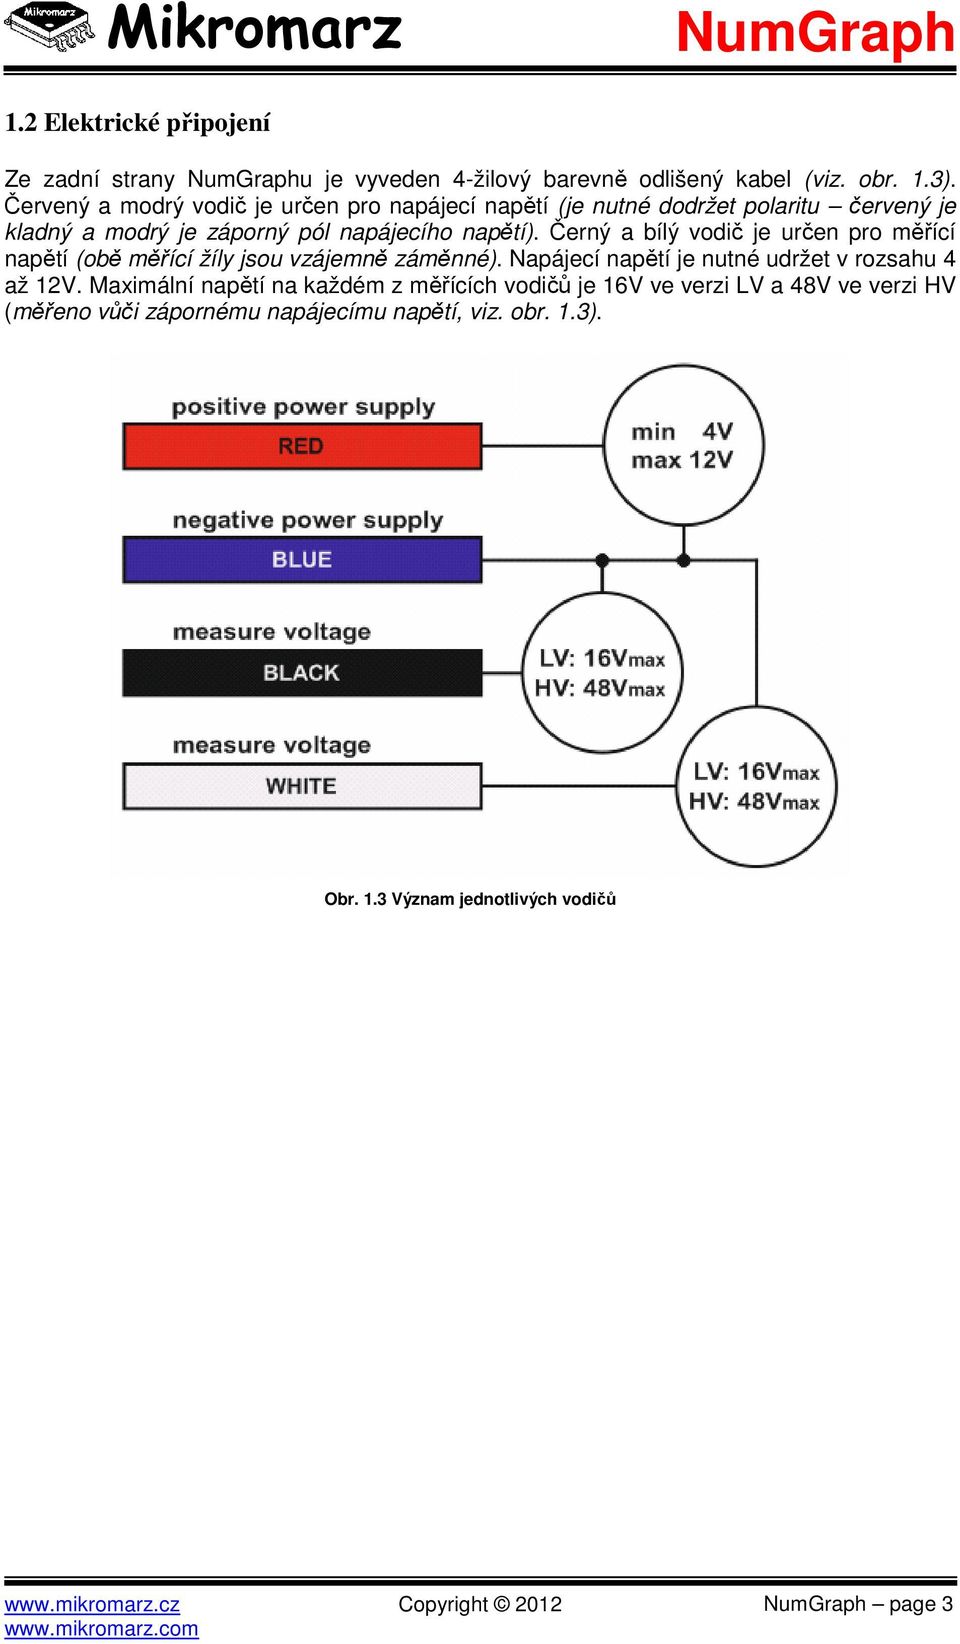 Černý a bílý vodič je určen pro měřící napětí (obě měřící žíly jsou vzájemně záměnné). Napájecí napětí je nutné udržet v rozsahu 4 až 12V.